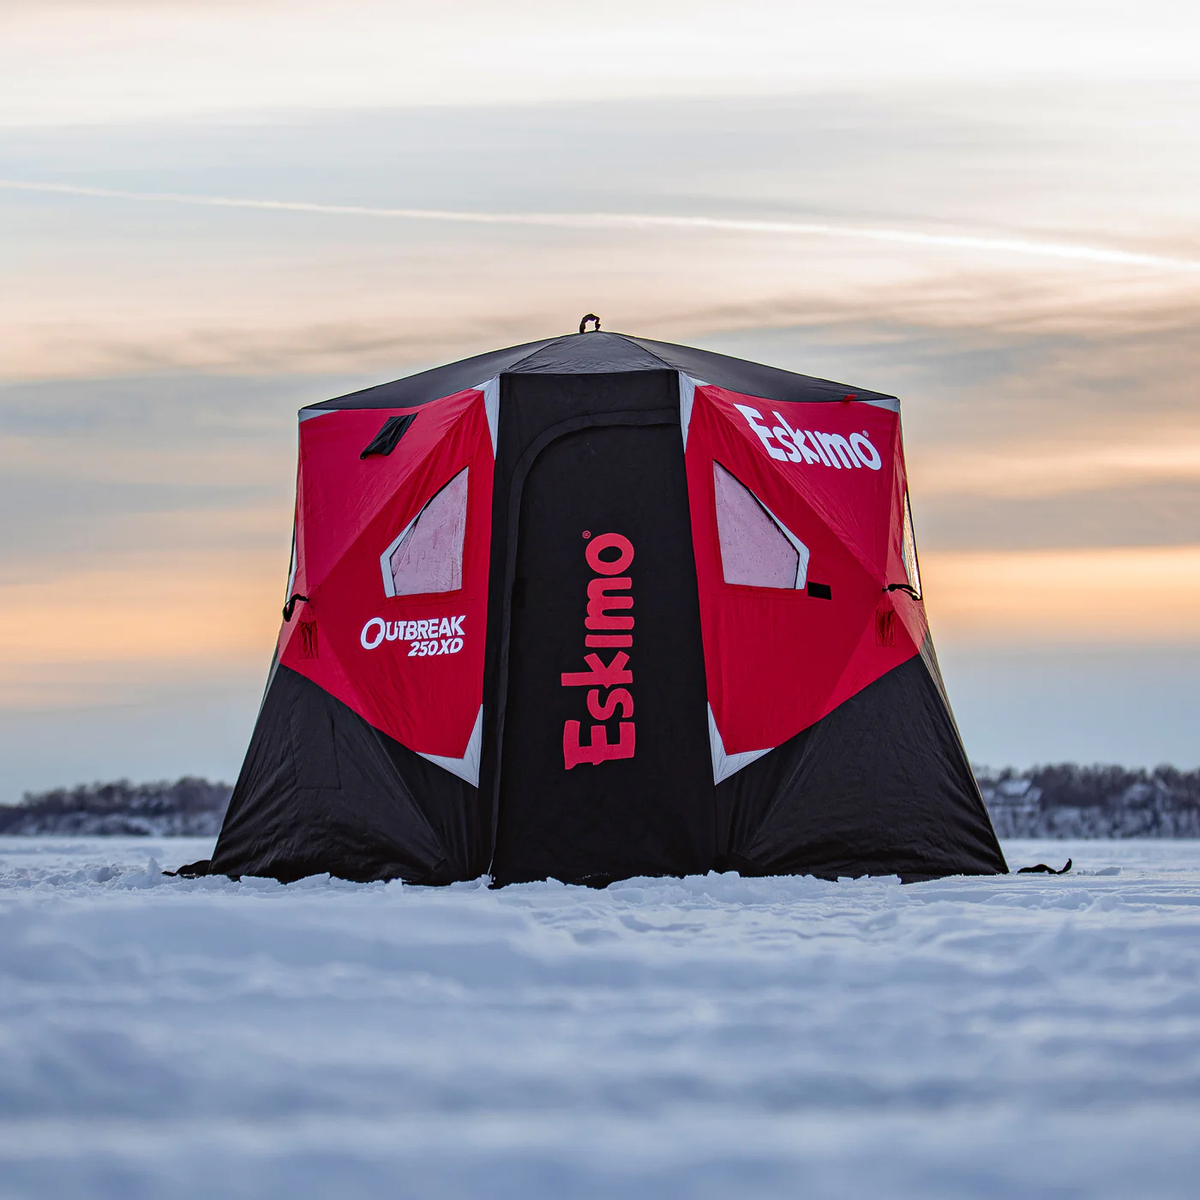 Eskimo Outbreak 250XD Hub Ice Fishing Shelter